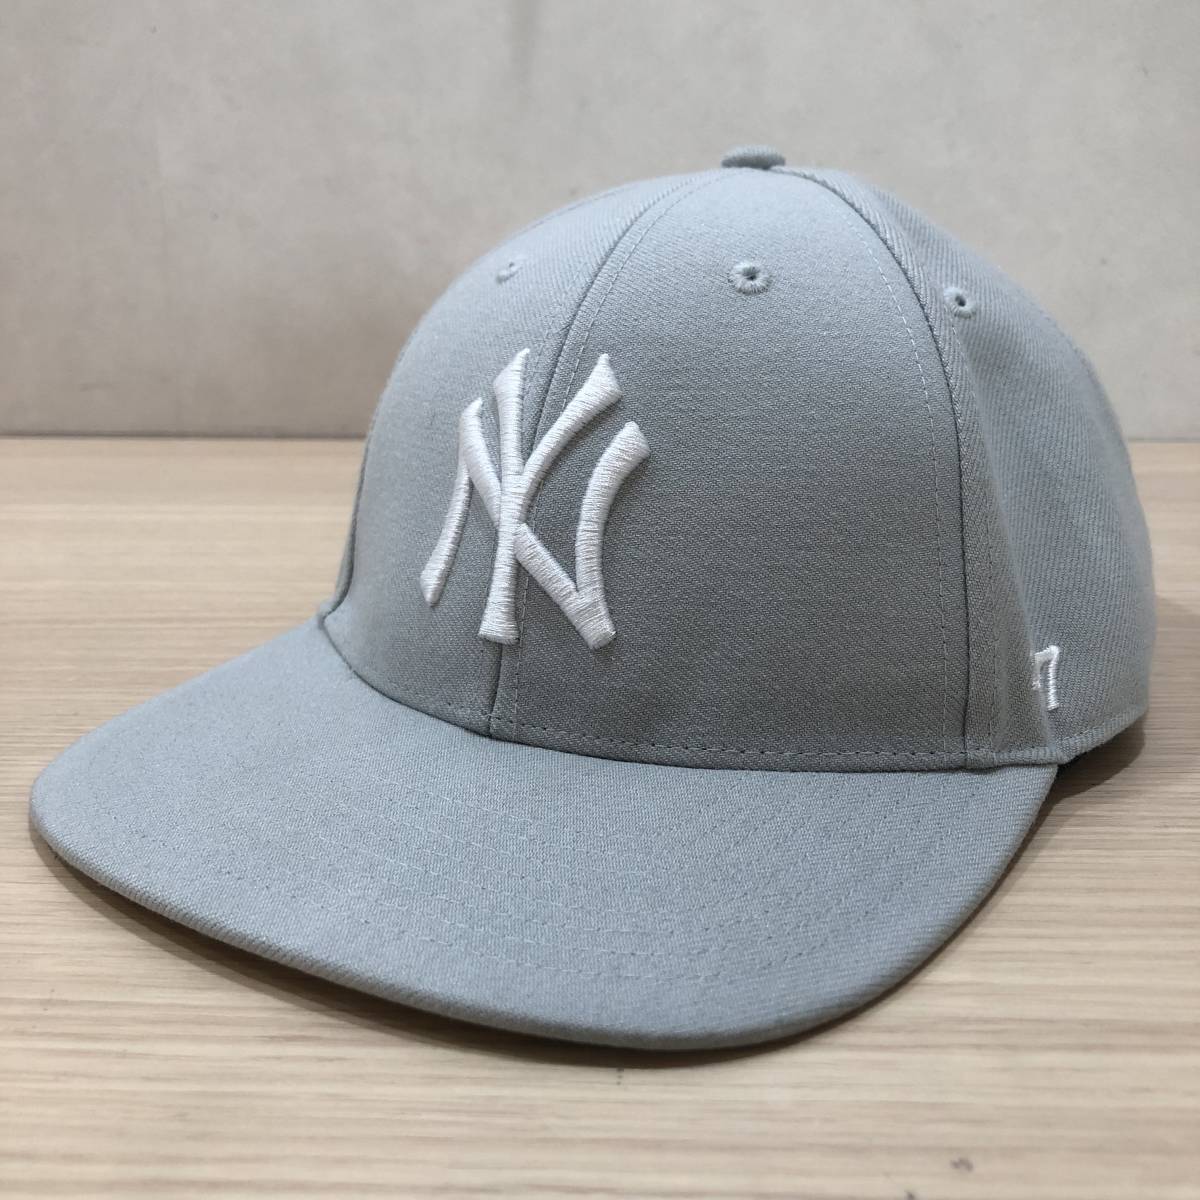 『New York Yankees ヤンキース キャップ GREY グレー 47キャップ 』_画像2